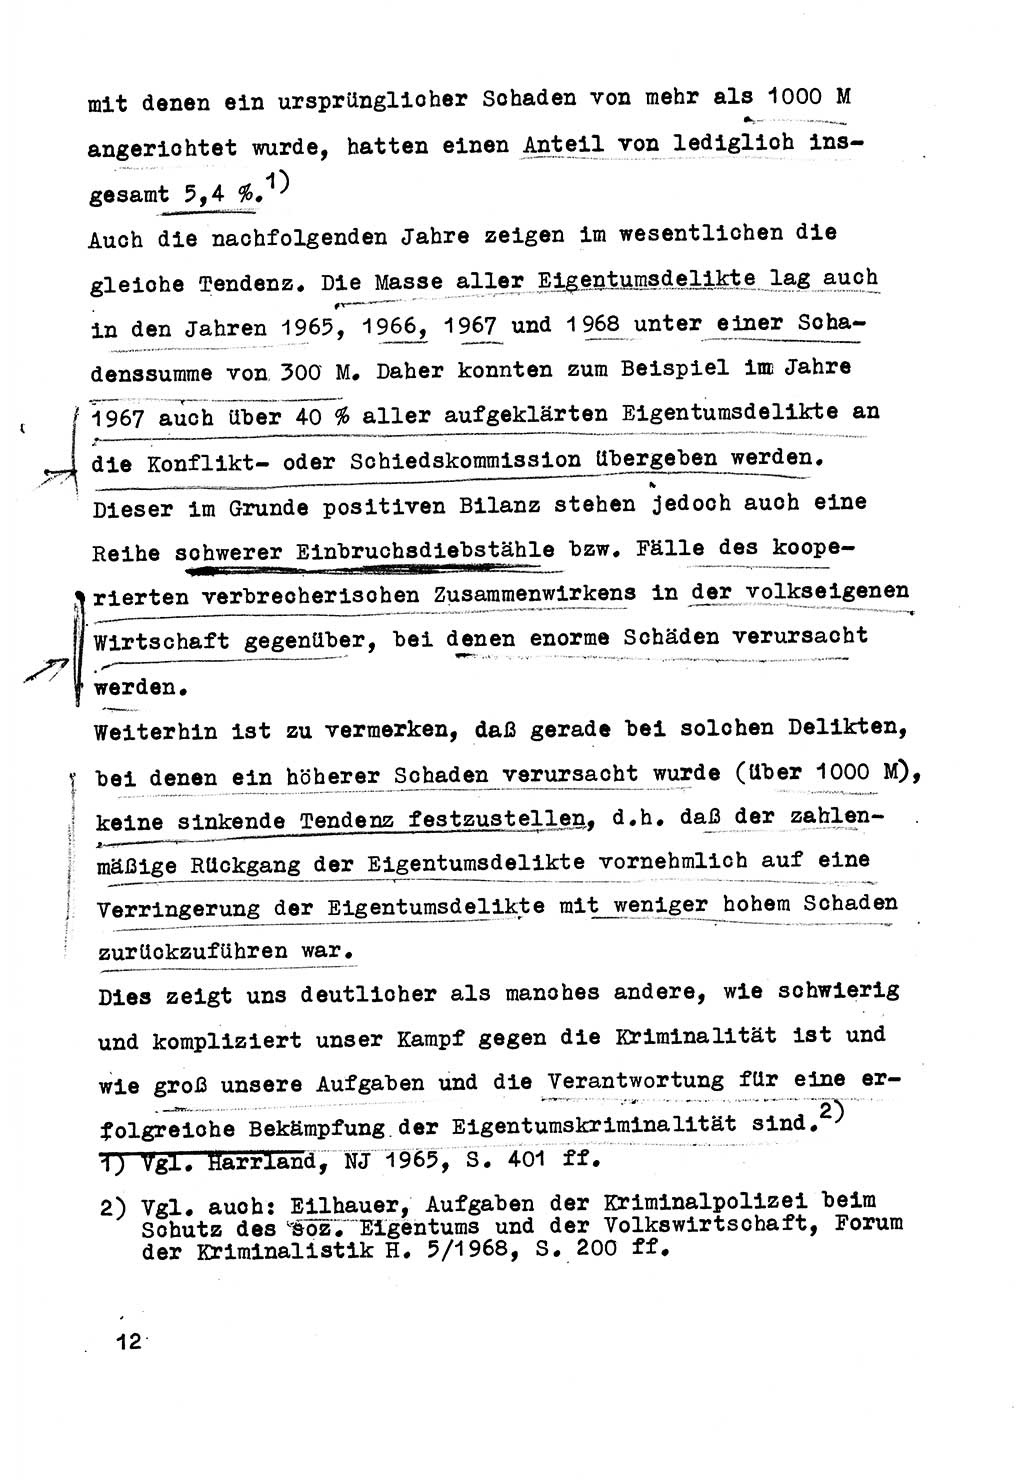 Strafrecht der DDR (Deutsche Demokratische Republik), Besonderer Teil, Lehrmaterial, Heft 5 1970, Seite 12 (Strafr. DDR BT Lehrmat. H. 5 1970, S. 12)